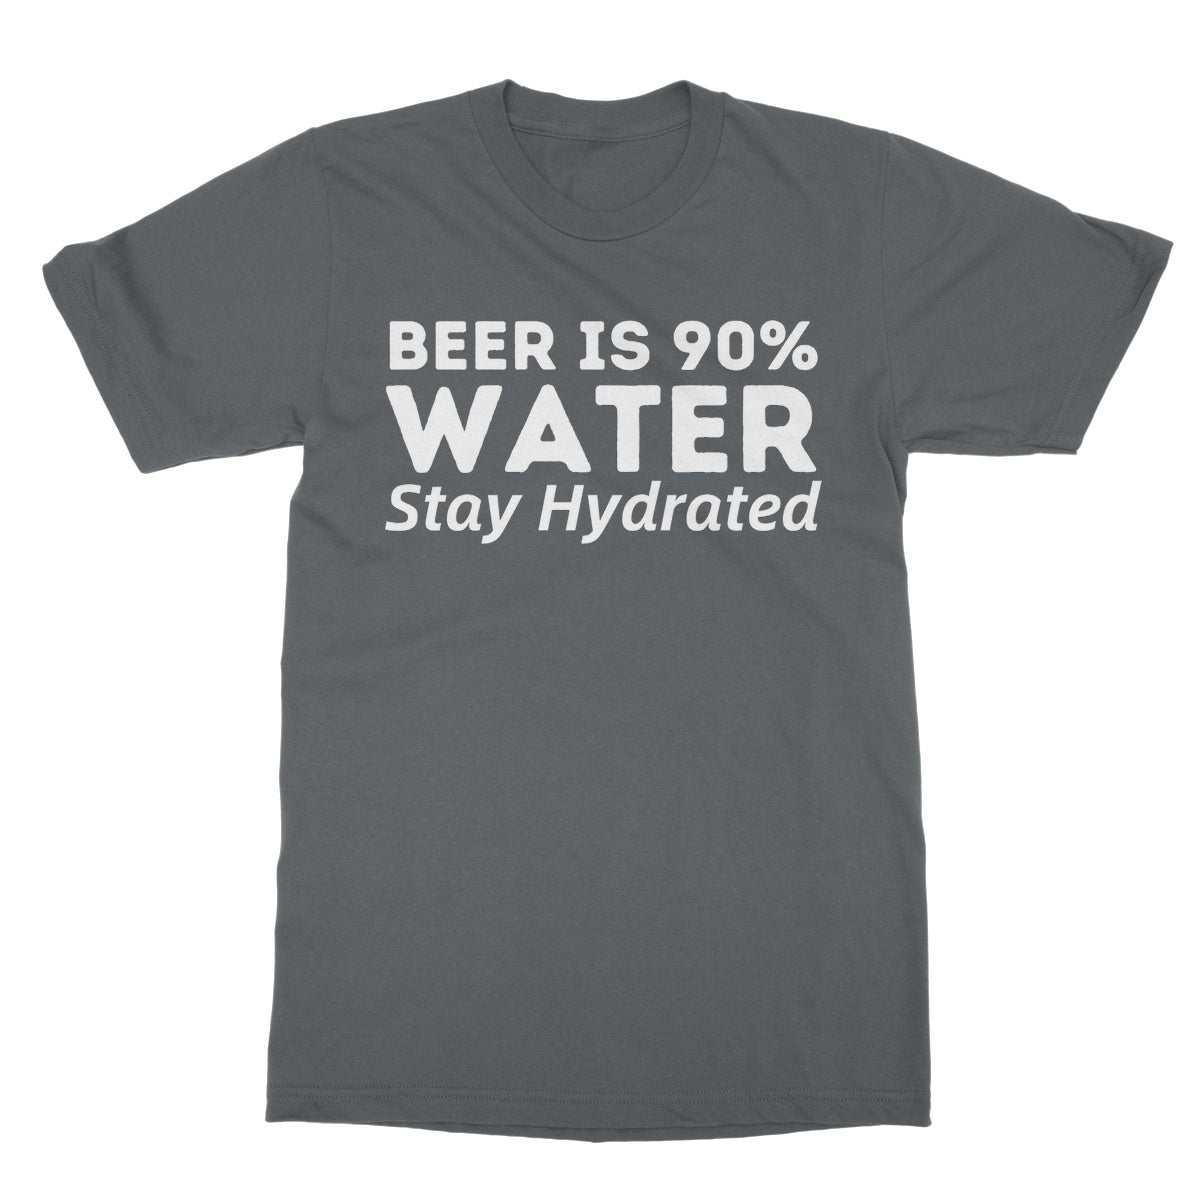 beer is 90% water t shirt grey